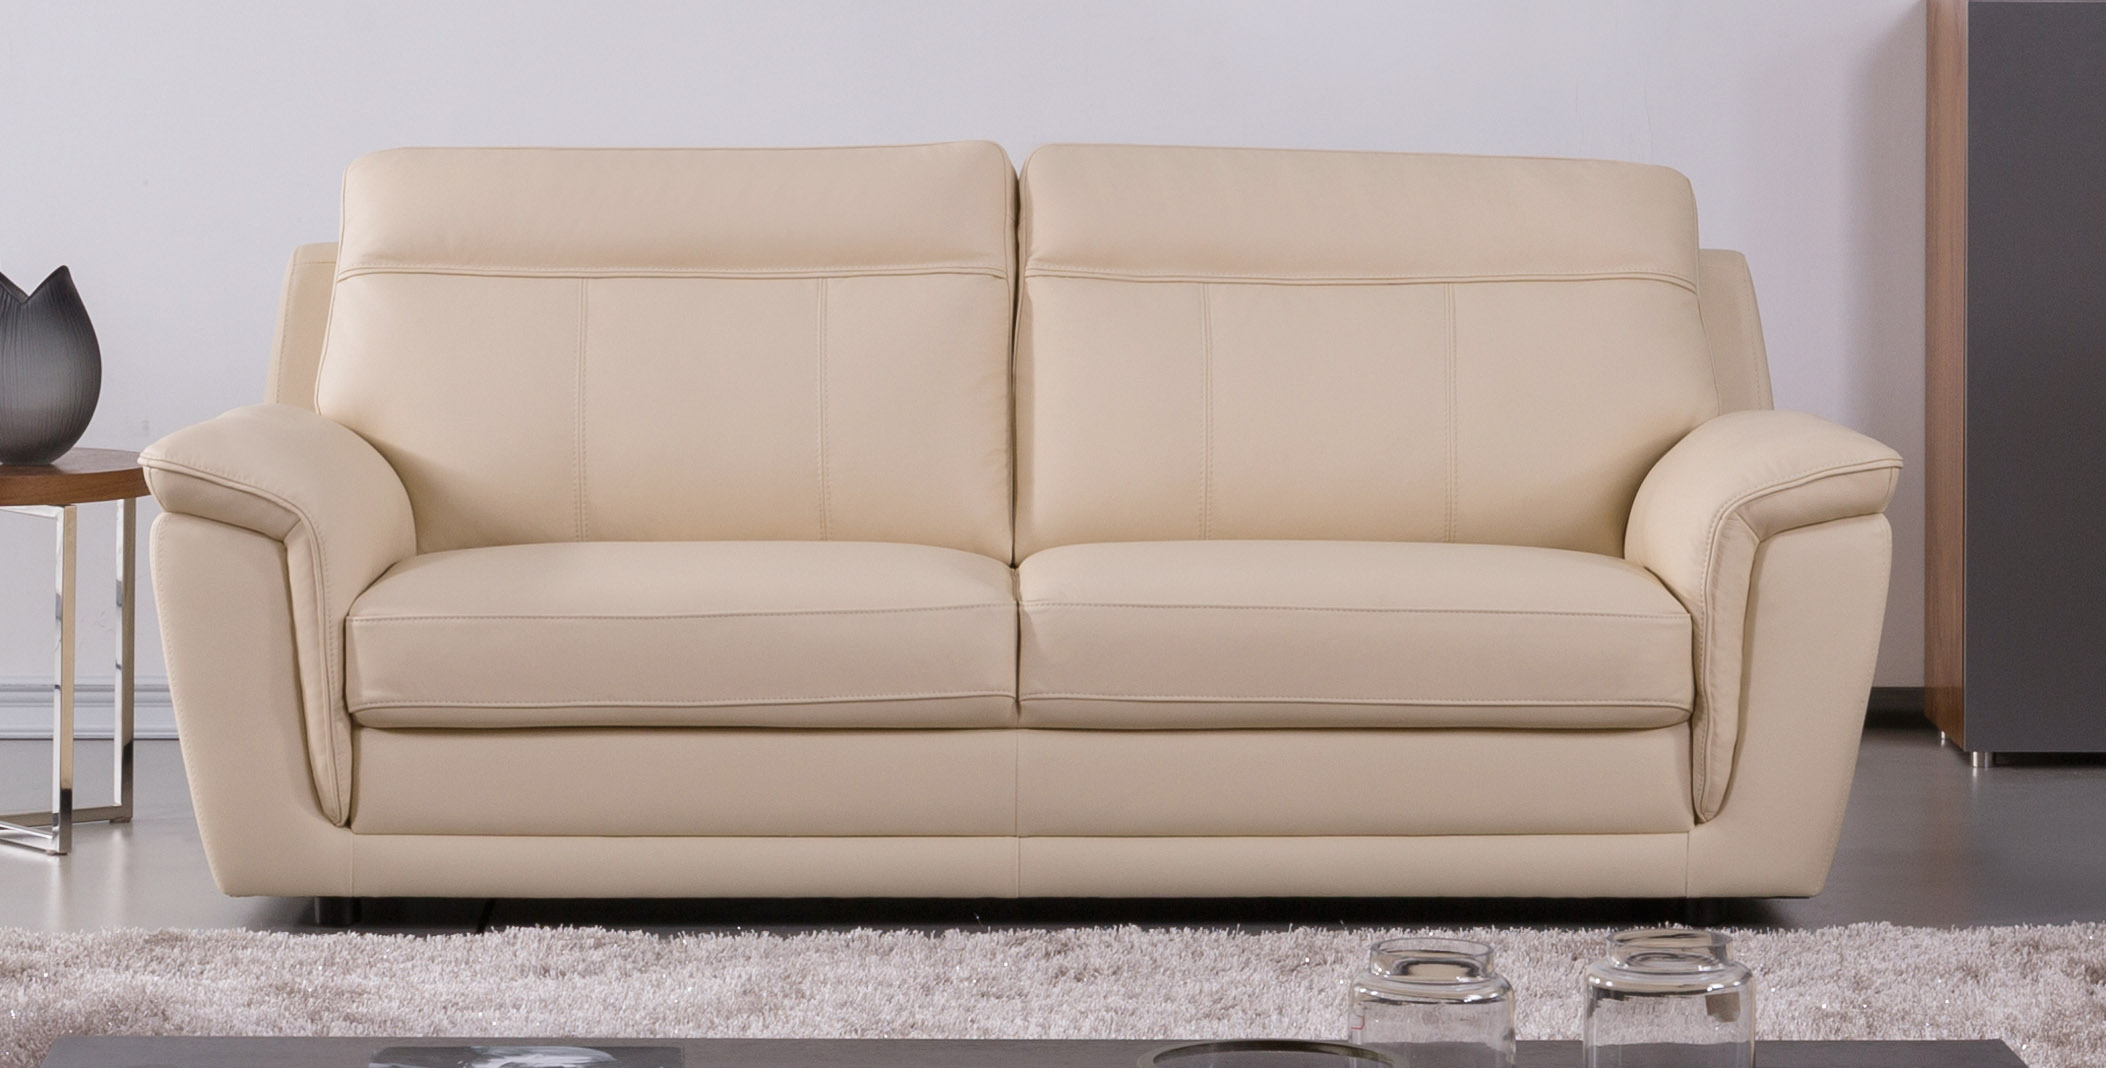 italian leather sofa crack repair